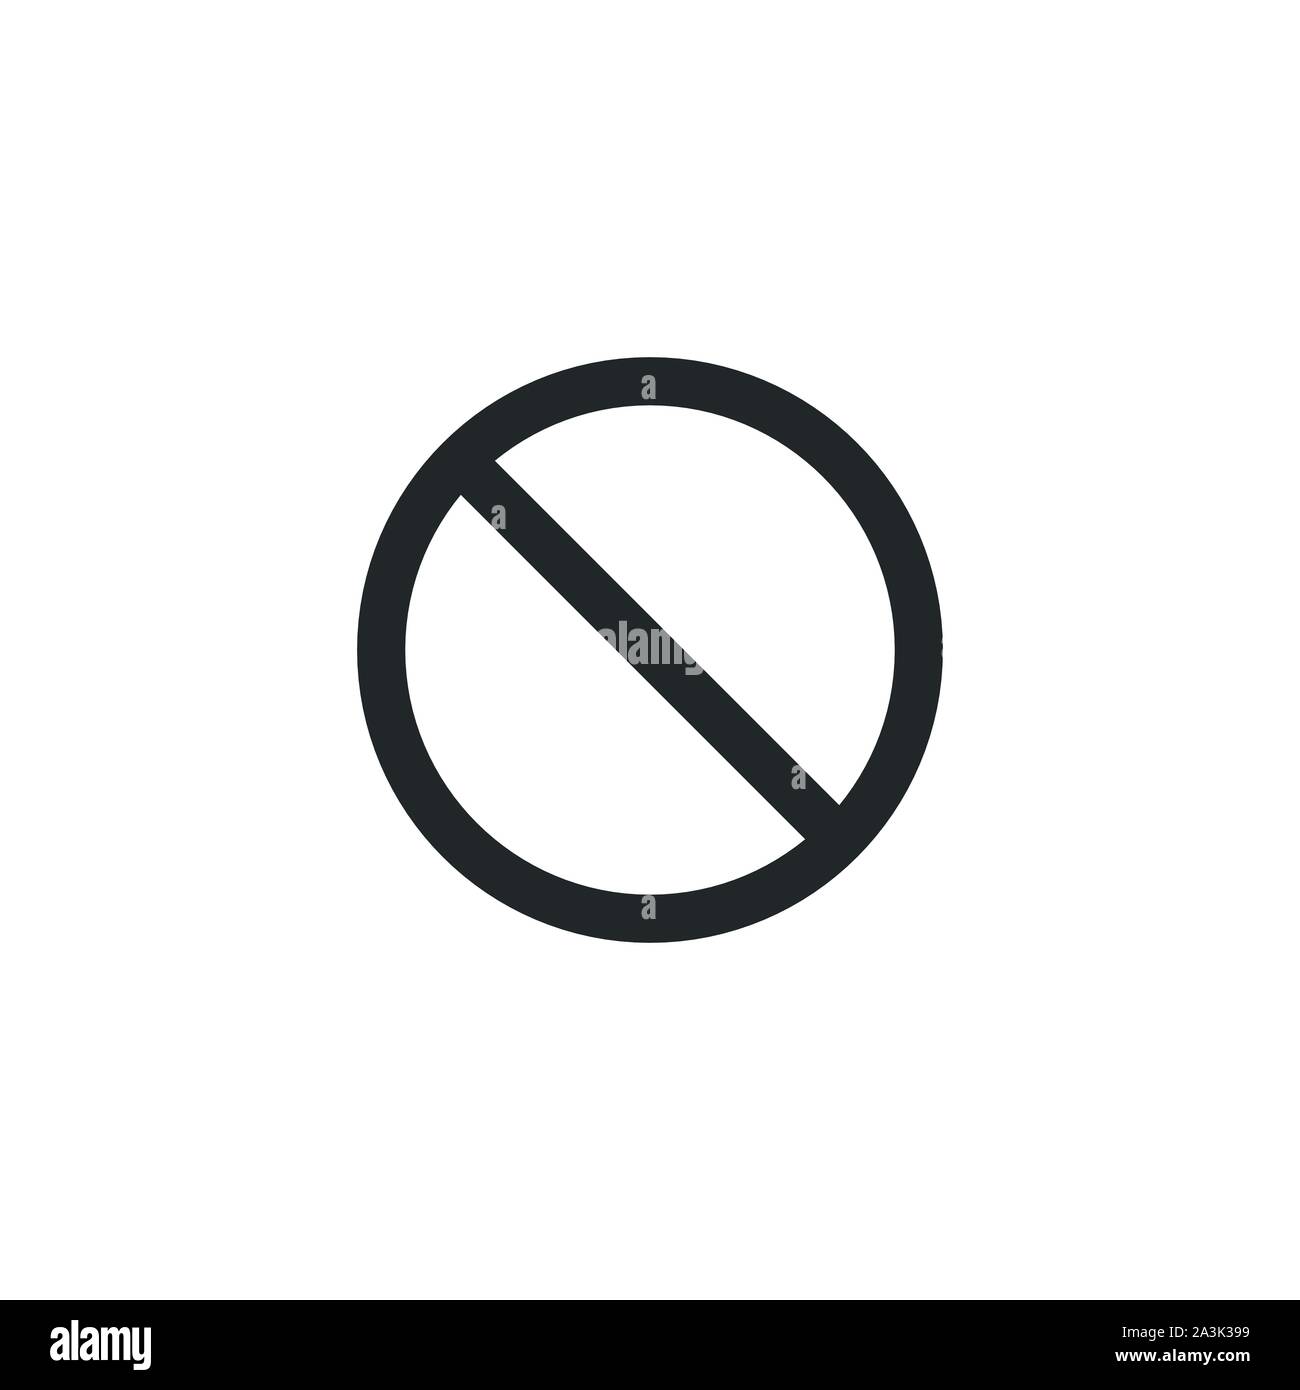 Vietato vietare o fermare il traffico illegale segno, icona nera. Stock illustrazione vettoriale isolati su sfondo bianco. Illustrazione Vettoriale